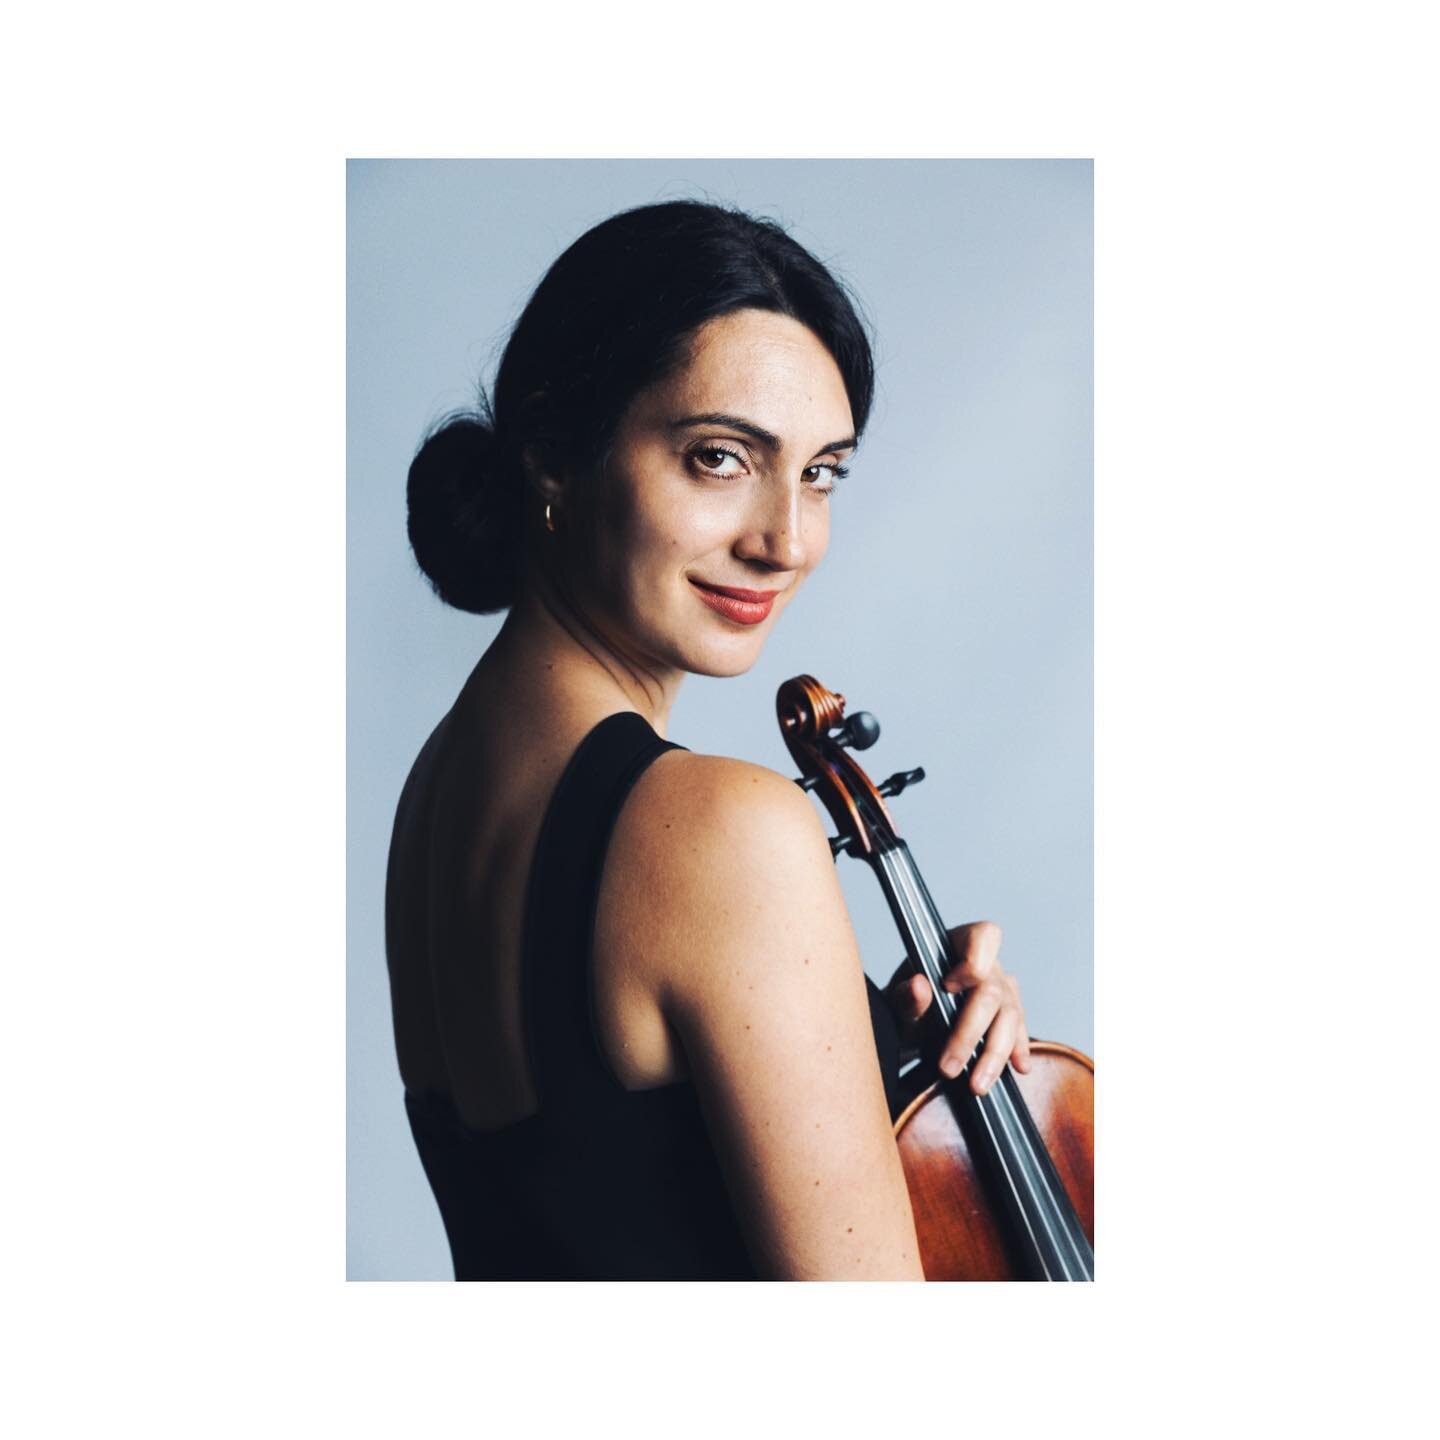 Marta Sierra violinista
@_martasierra_ @cadaver_exquisit_studio #bookfoto #bookactores #portrait #musicianportrait